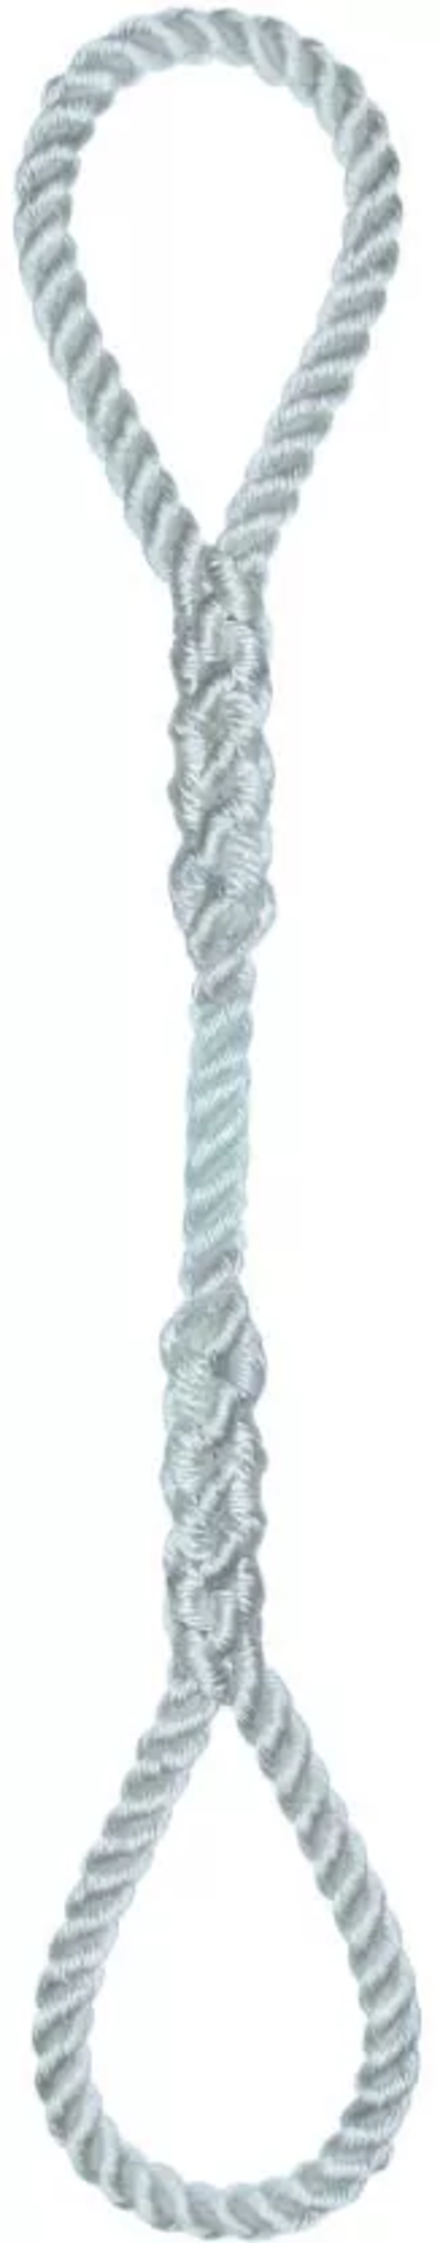 Élingue corde d.18 mm cmu 425 kg 2 grandes boucles long 1 m LEVAC - 4404J